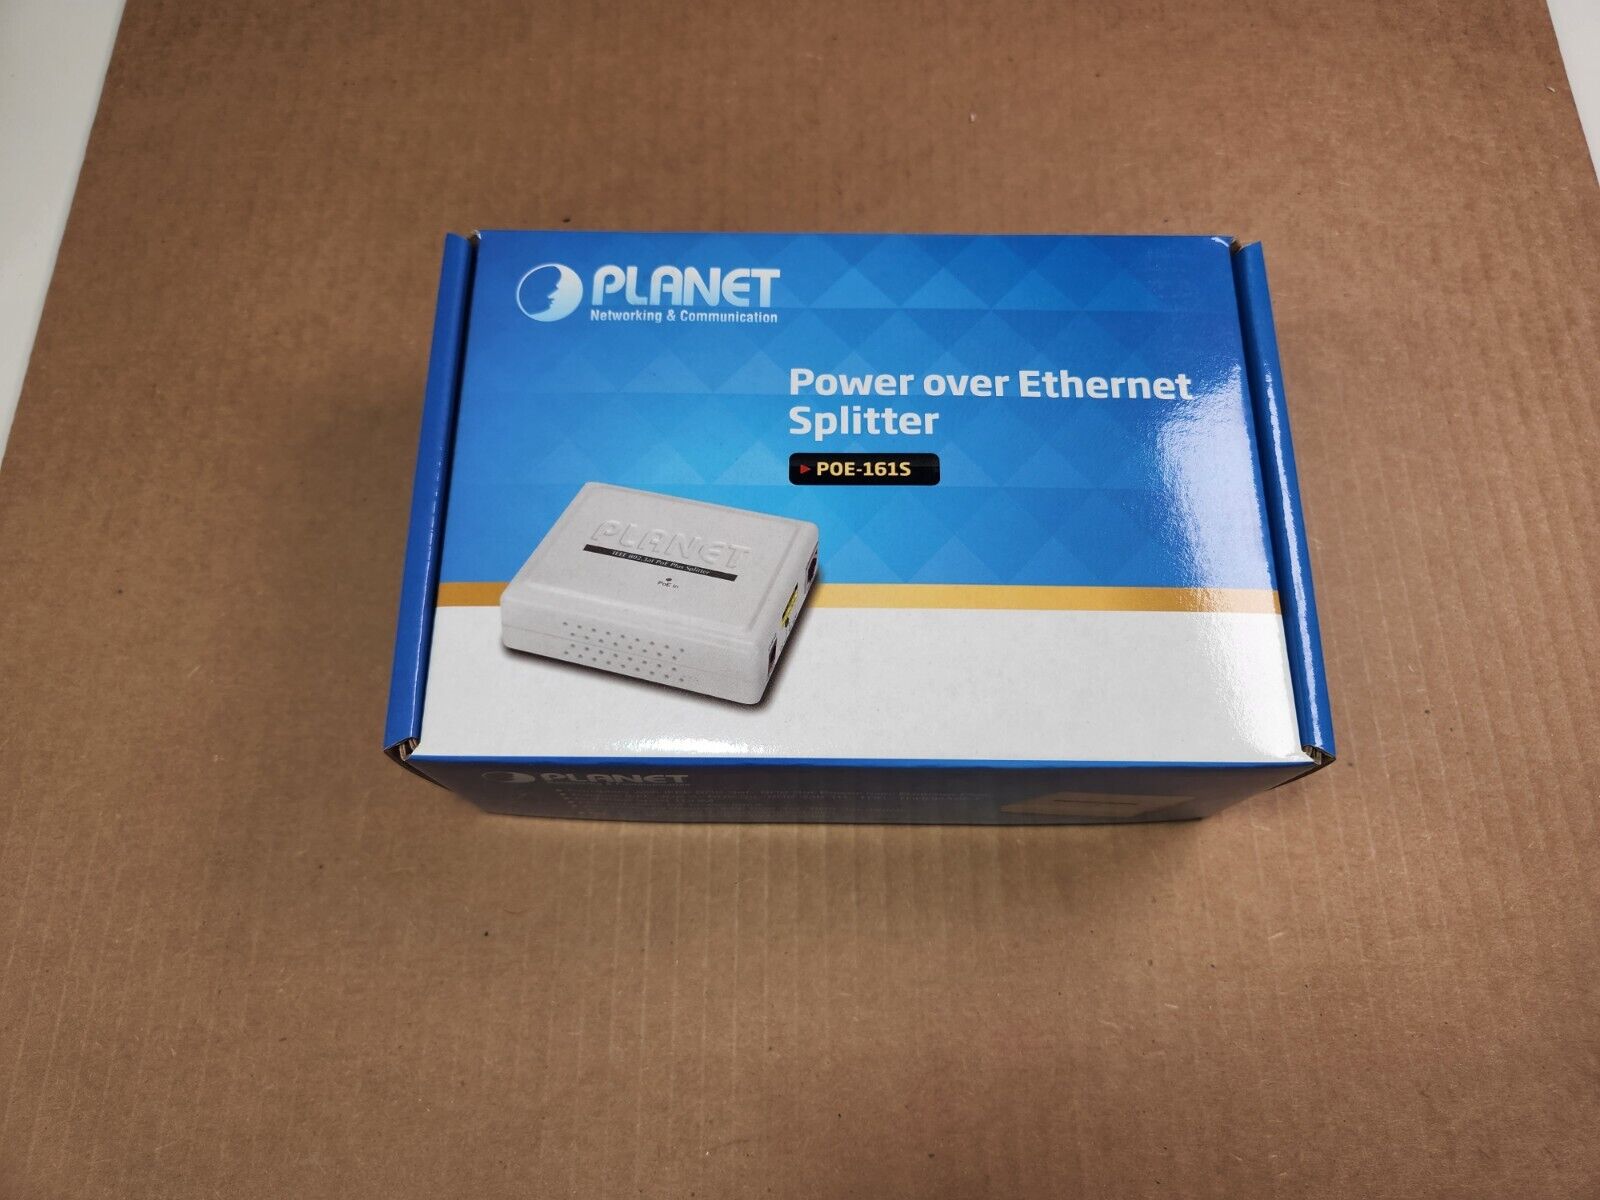 Planet POE-161S Gigabit Power over Ethernet Splitter IEEE 802.3at